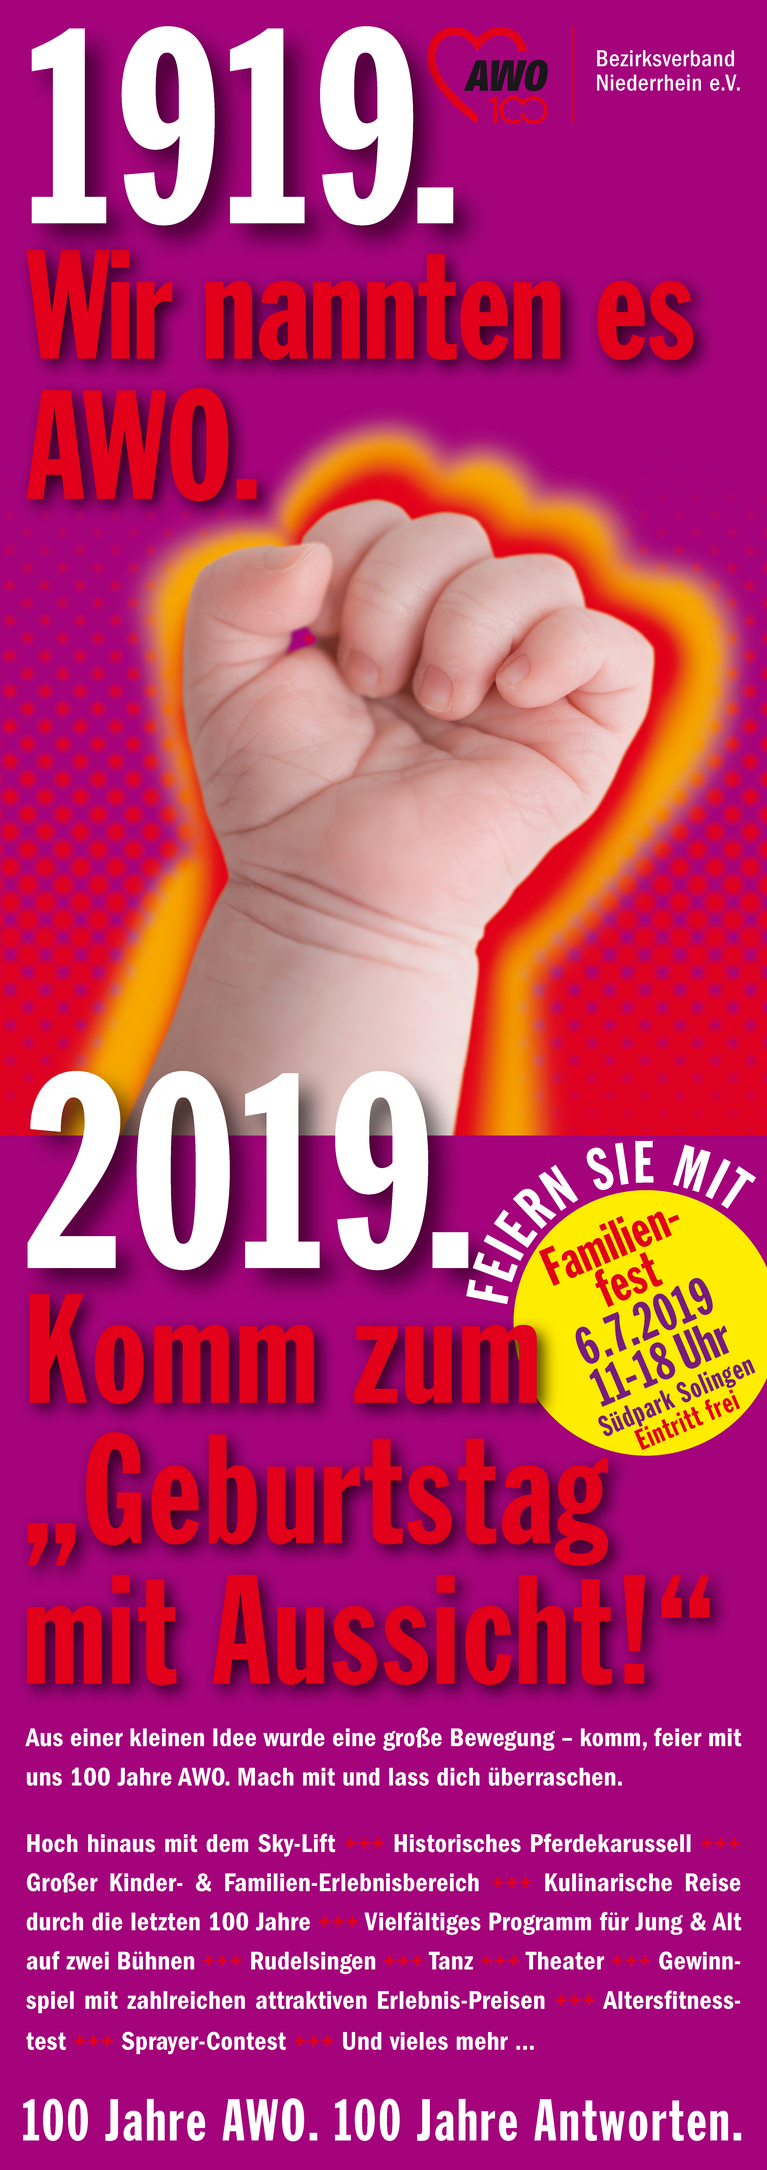 Ankündigungsplakat für das Familienfest der AWO Niederrhein "Geburstag mit Aussicht" am 6.7.2019 in Solingen